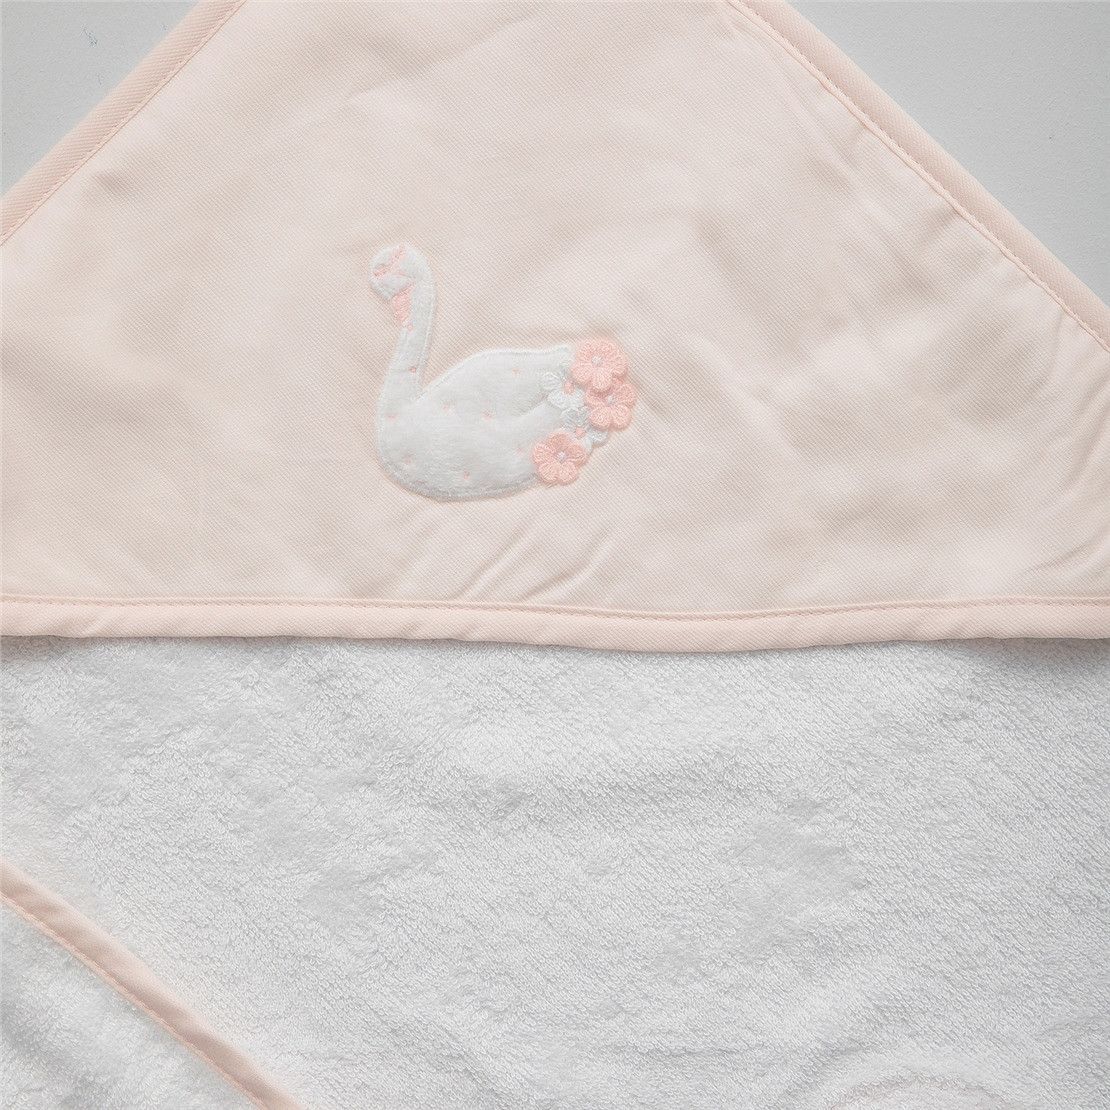 Полотенце - уголок для новорожденных Swan 129*97 белое с розовым